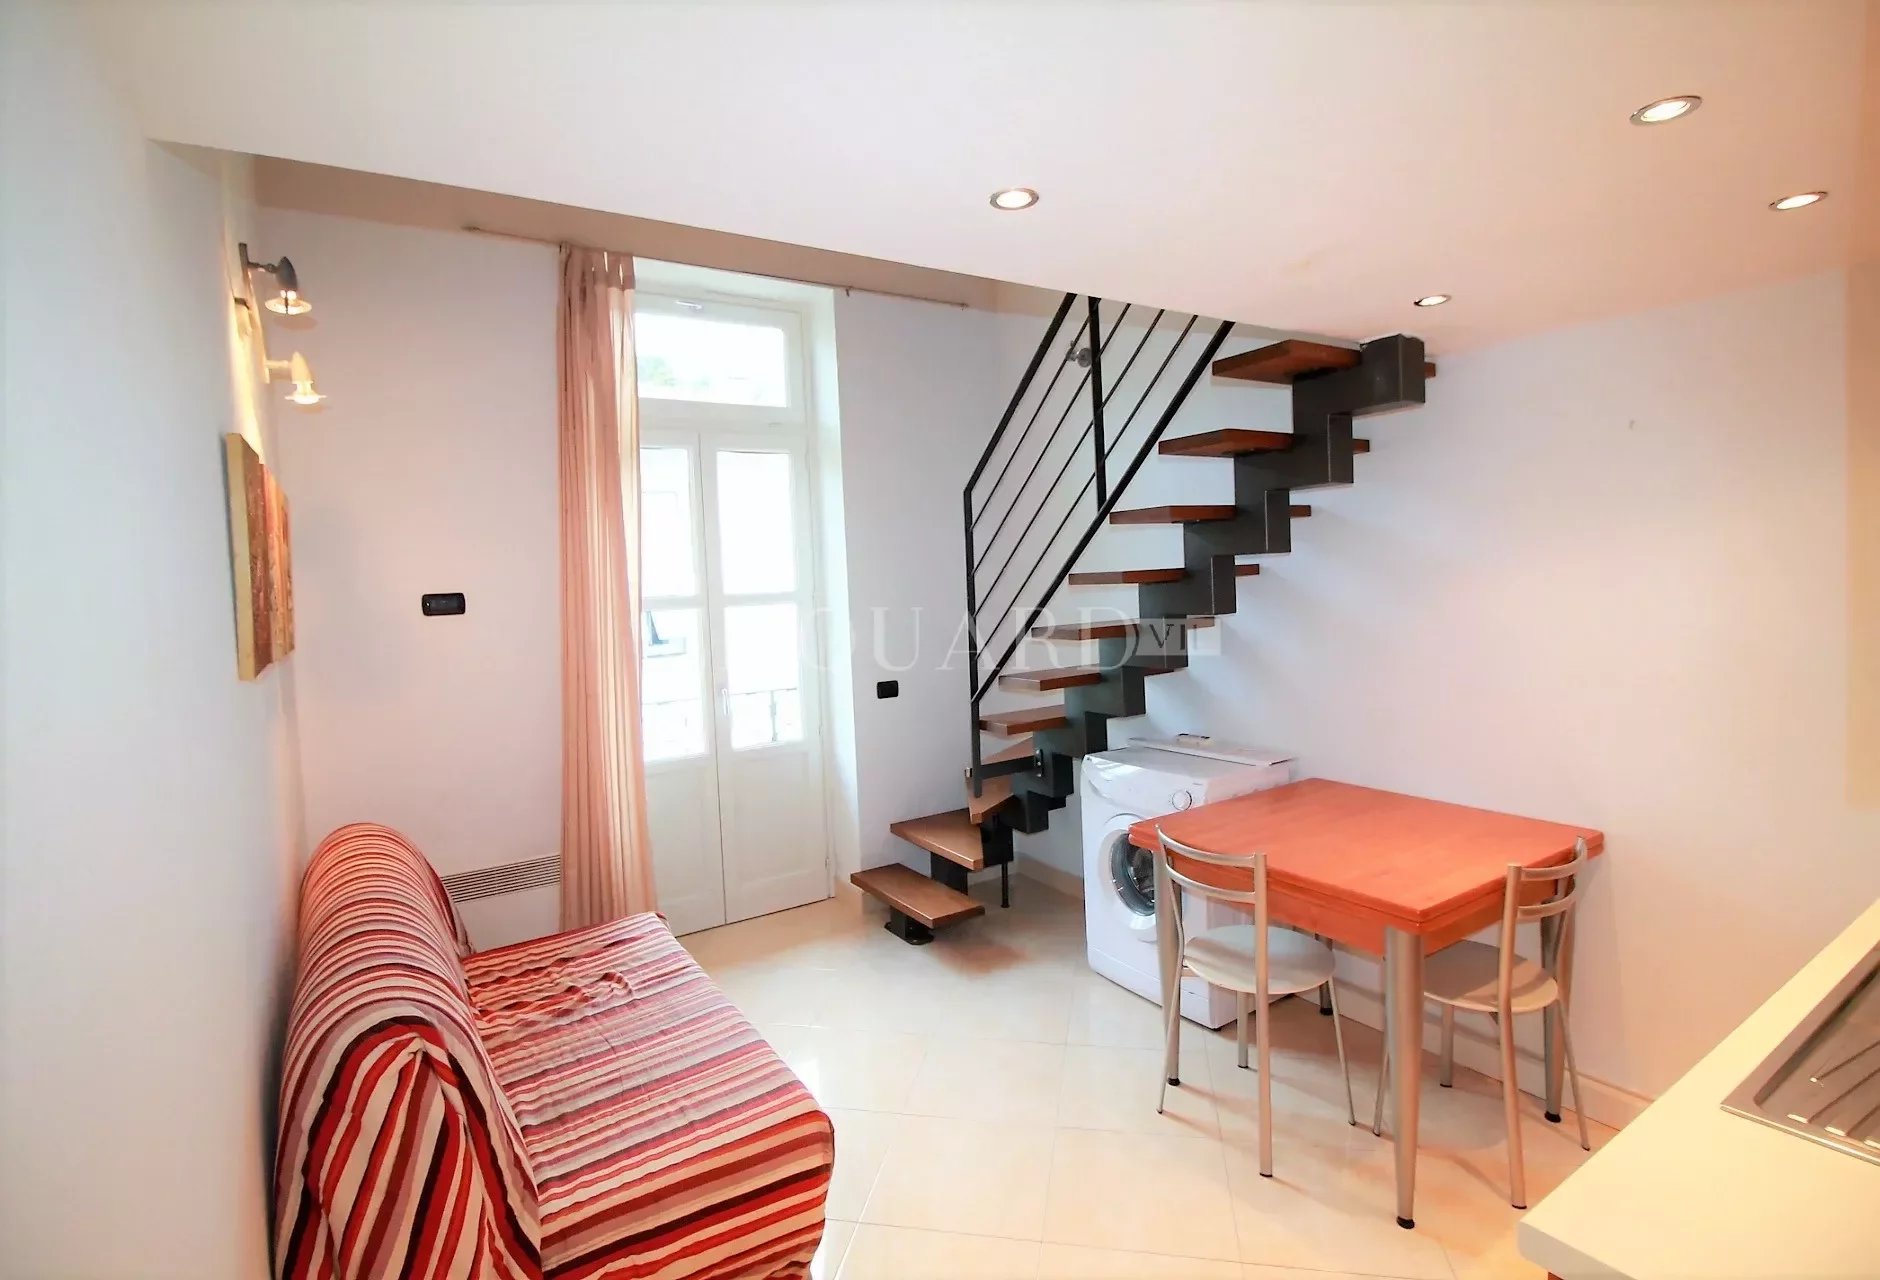 1 Bed, 1 Bath, ApartmentFor Sale, Menton, Alpes-Maritimes